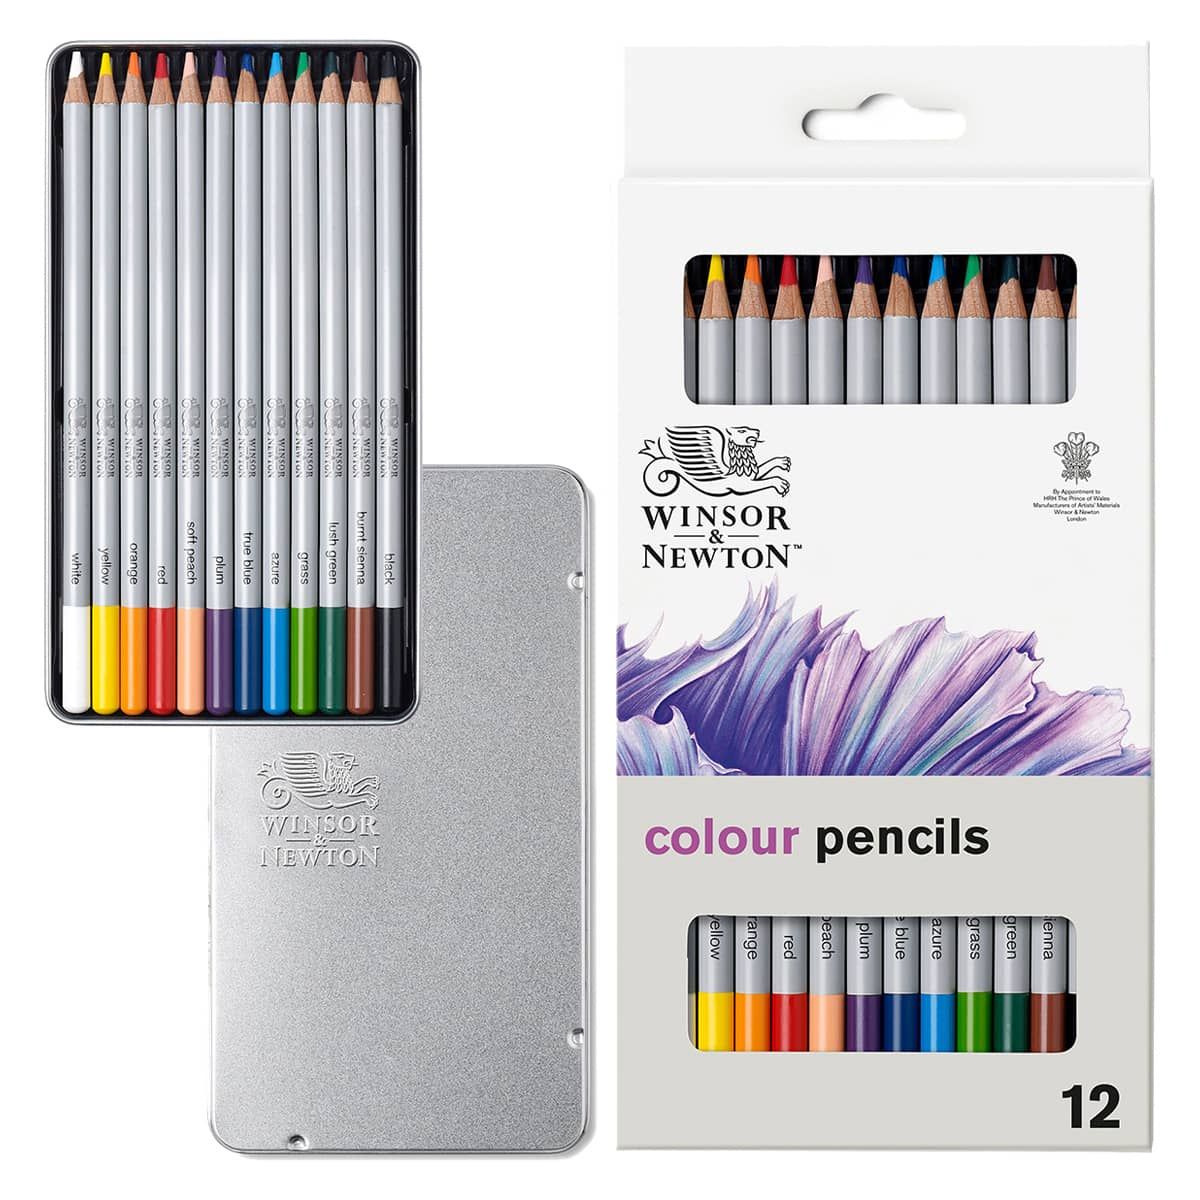 https://www.jerrysartarama.com/media/catalog/product/cache/ecb49a32eeb5603594b082bd5fe65733/t/i/tin-set-of-12-winsor-newton-studio-colour-pencil-sets-ls-v35279.jpg